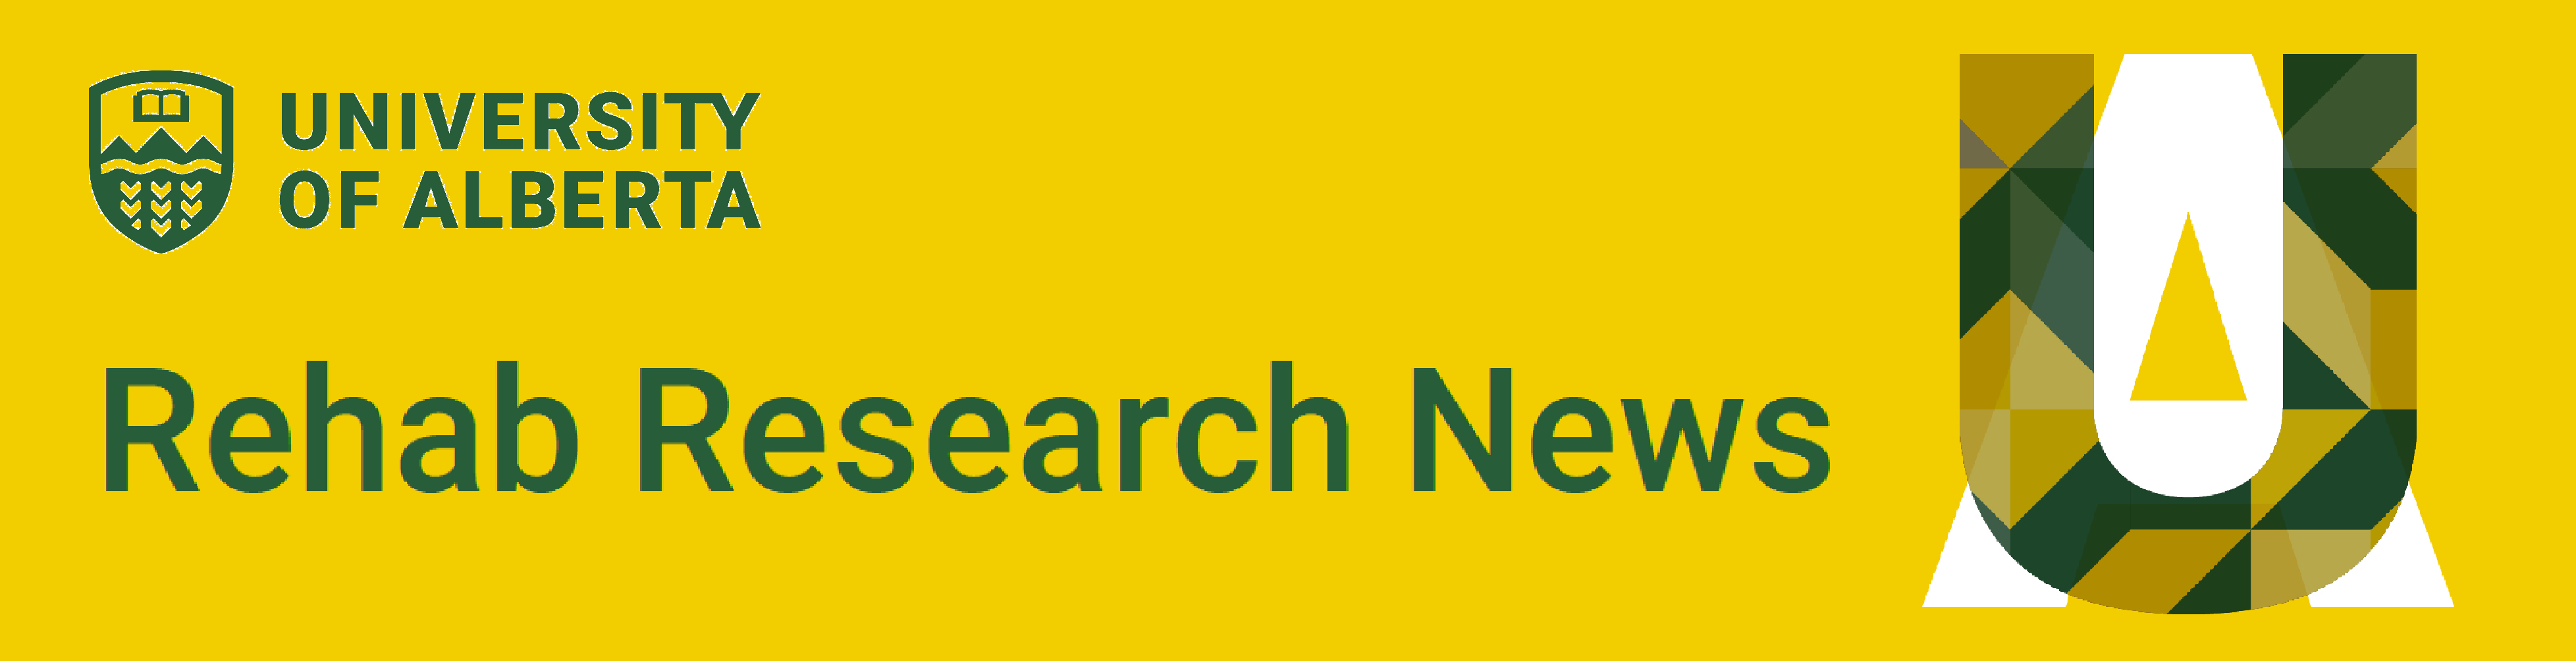 research news website banner